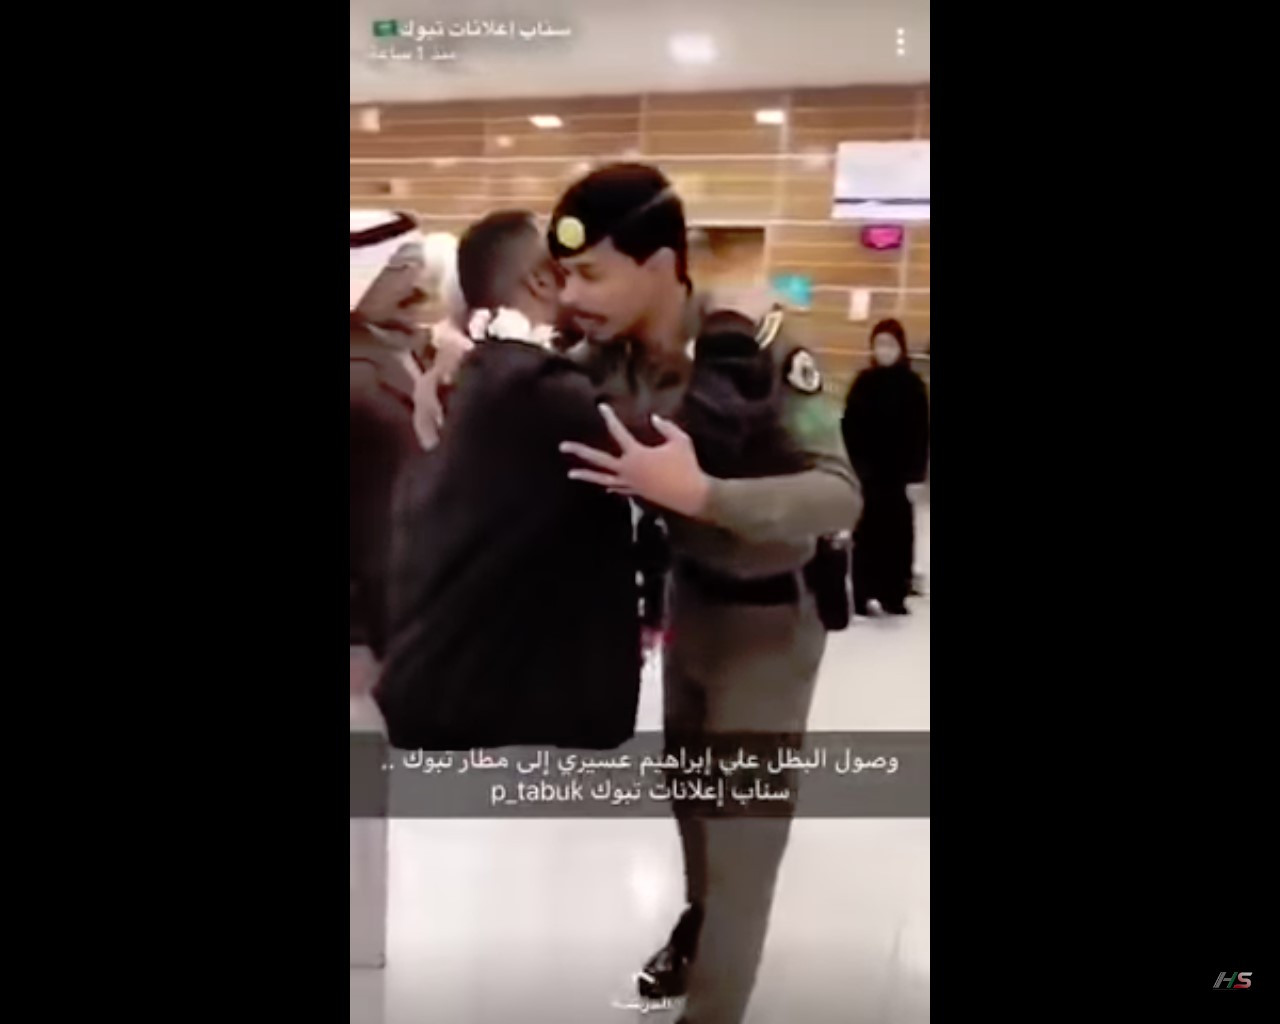 فيديو.. استقبال مؤثر لأحد مصابي الحد في مطار تبوك بعد رحلة علاج خارجية